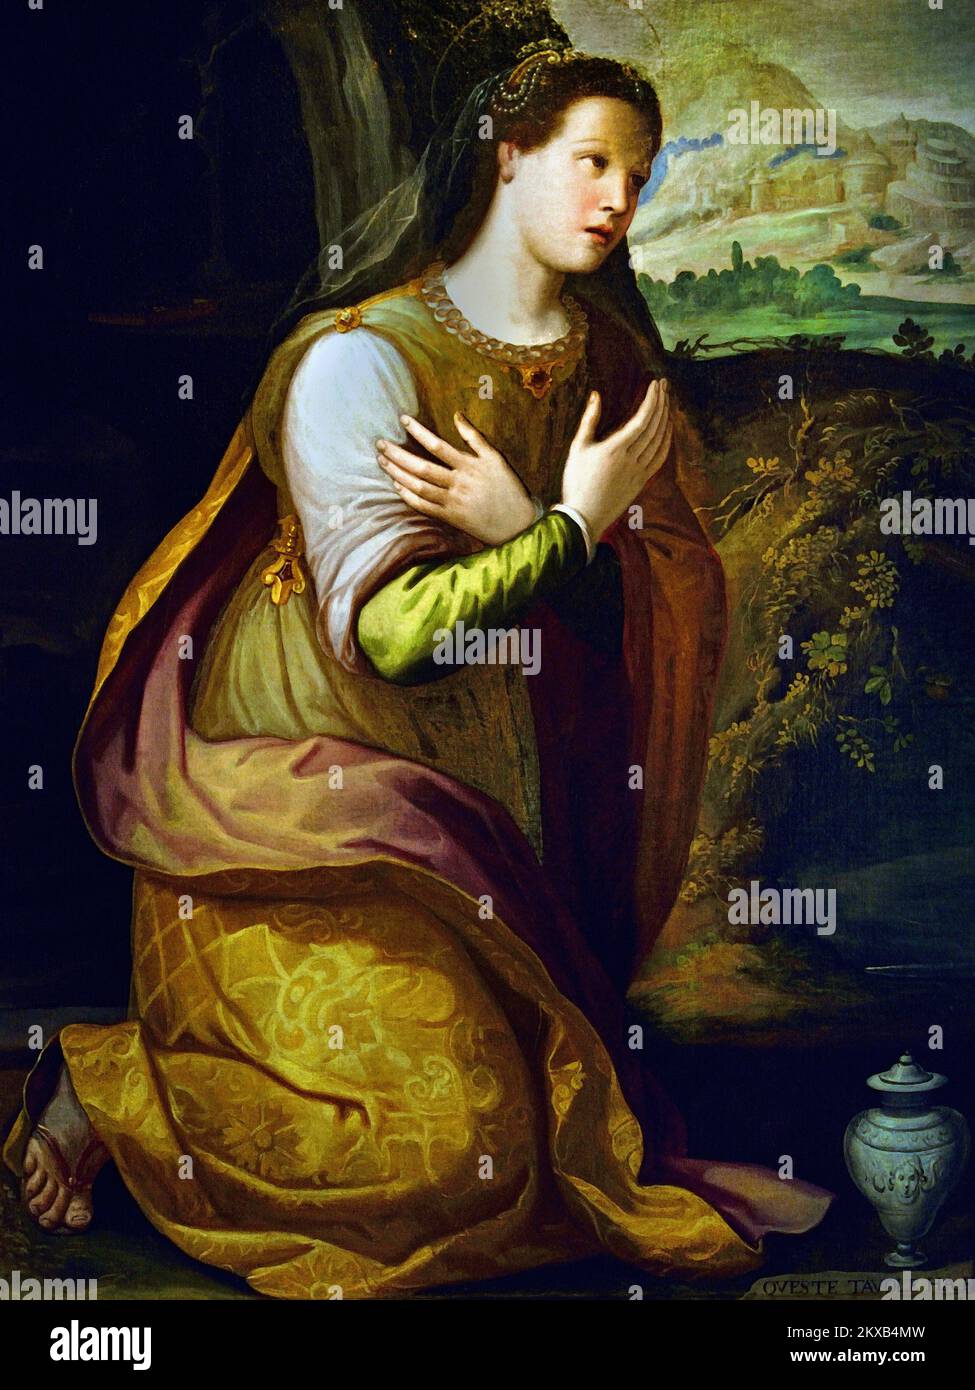 Heilige Maria Magdalena, Madeleine, Gebete, von einem ANONYMEN Maler Italien, Italienisch, 16. Jahrhundert, Mary Magdalene ist eine Frau in allen vier Evangelien des Neuen Testaments. Sie wurde eine treue Anhängerin Jesu, nachdem er sie von sieben Dämonen befreit hatte.) Stockfoto